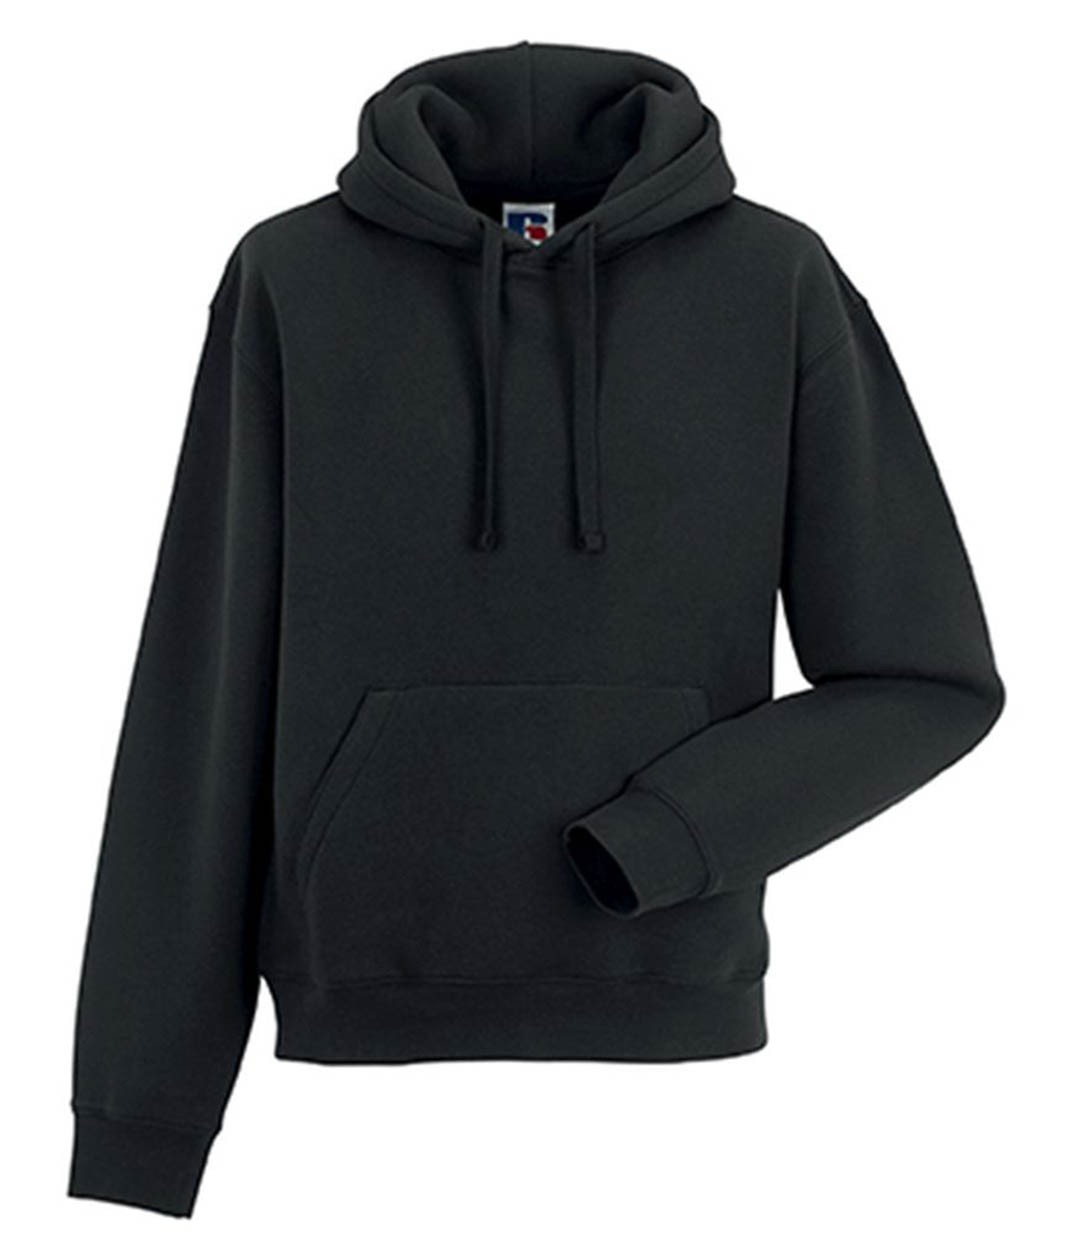 Russell 265M Authentic Hooded Sweatshirt - Standard Hoodies - Hoodies -  Sweatshirts - Leisurewear - Best Workwear